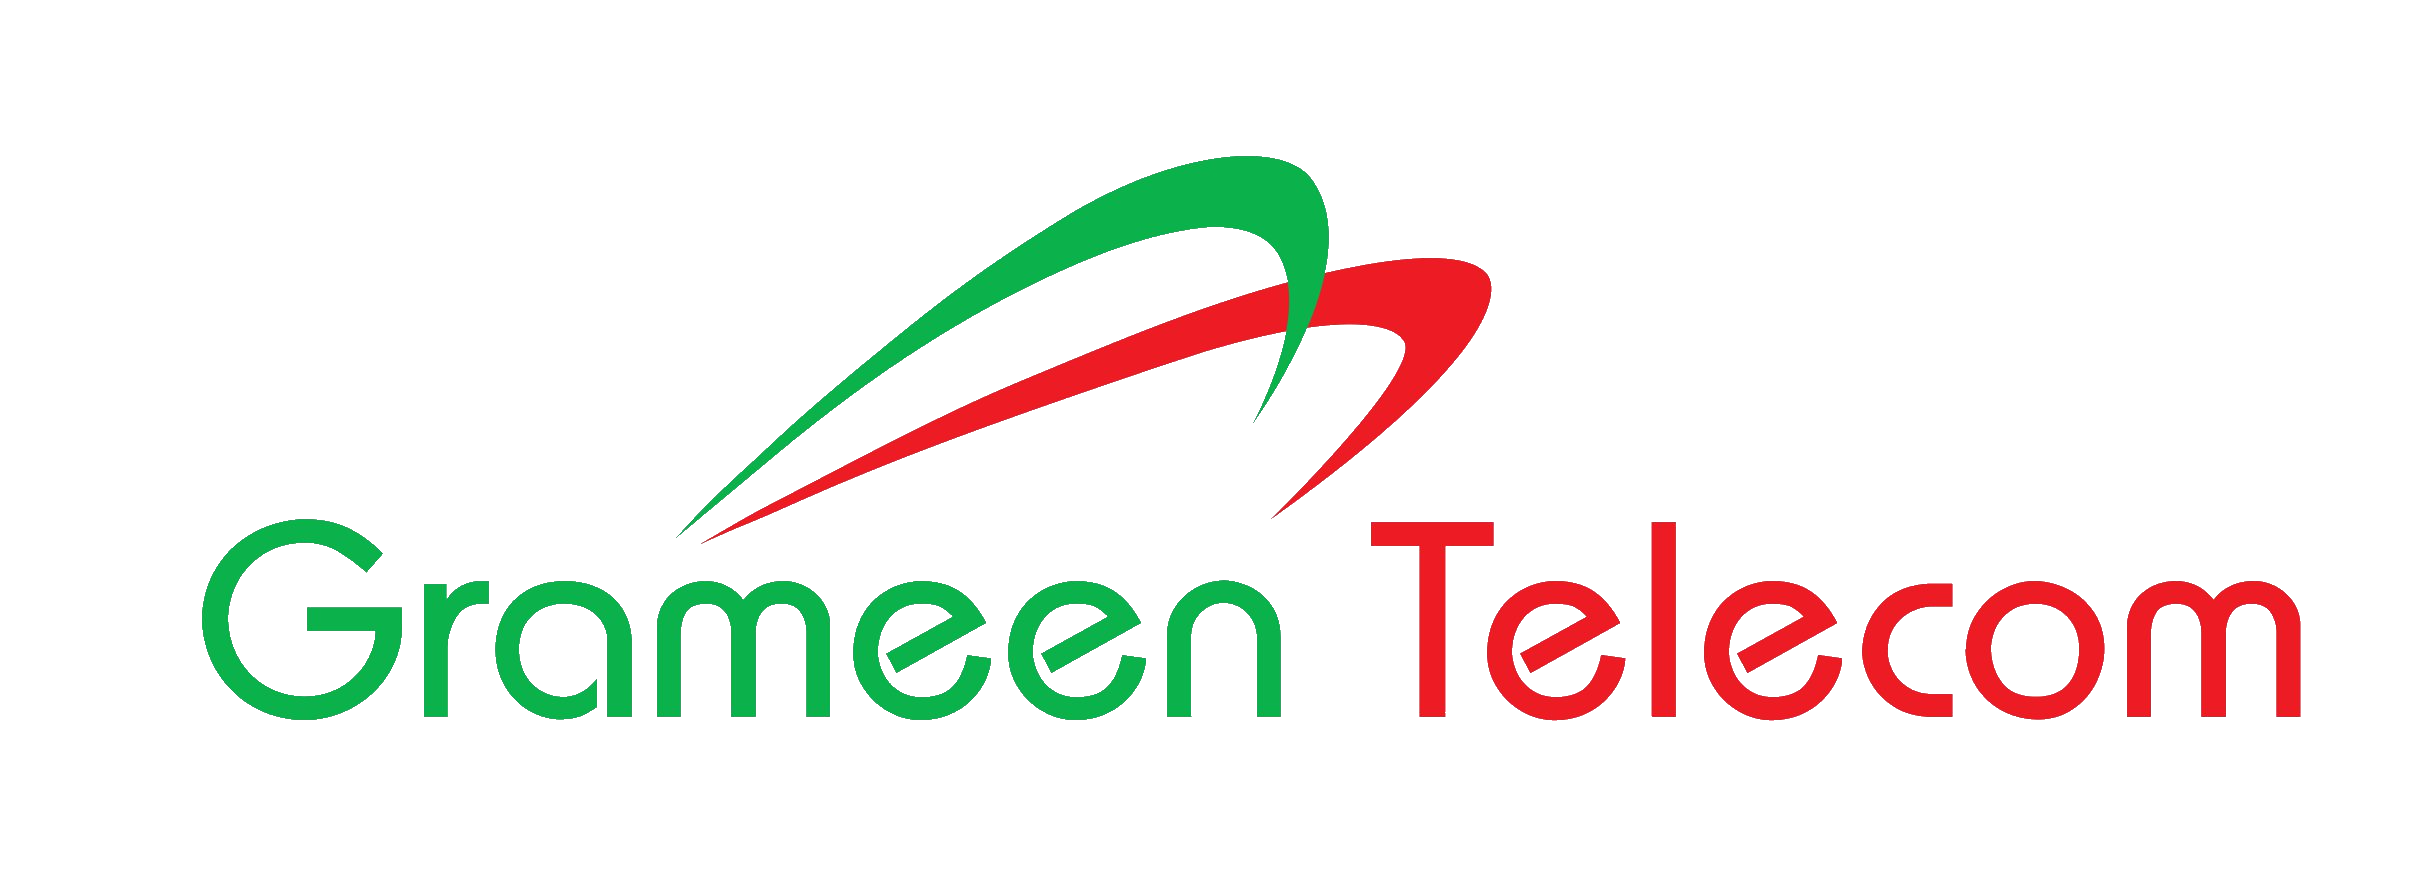 Grameen Telecom